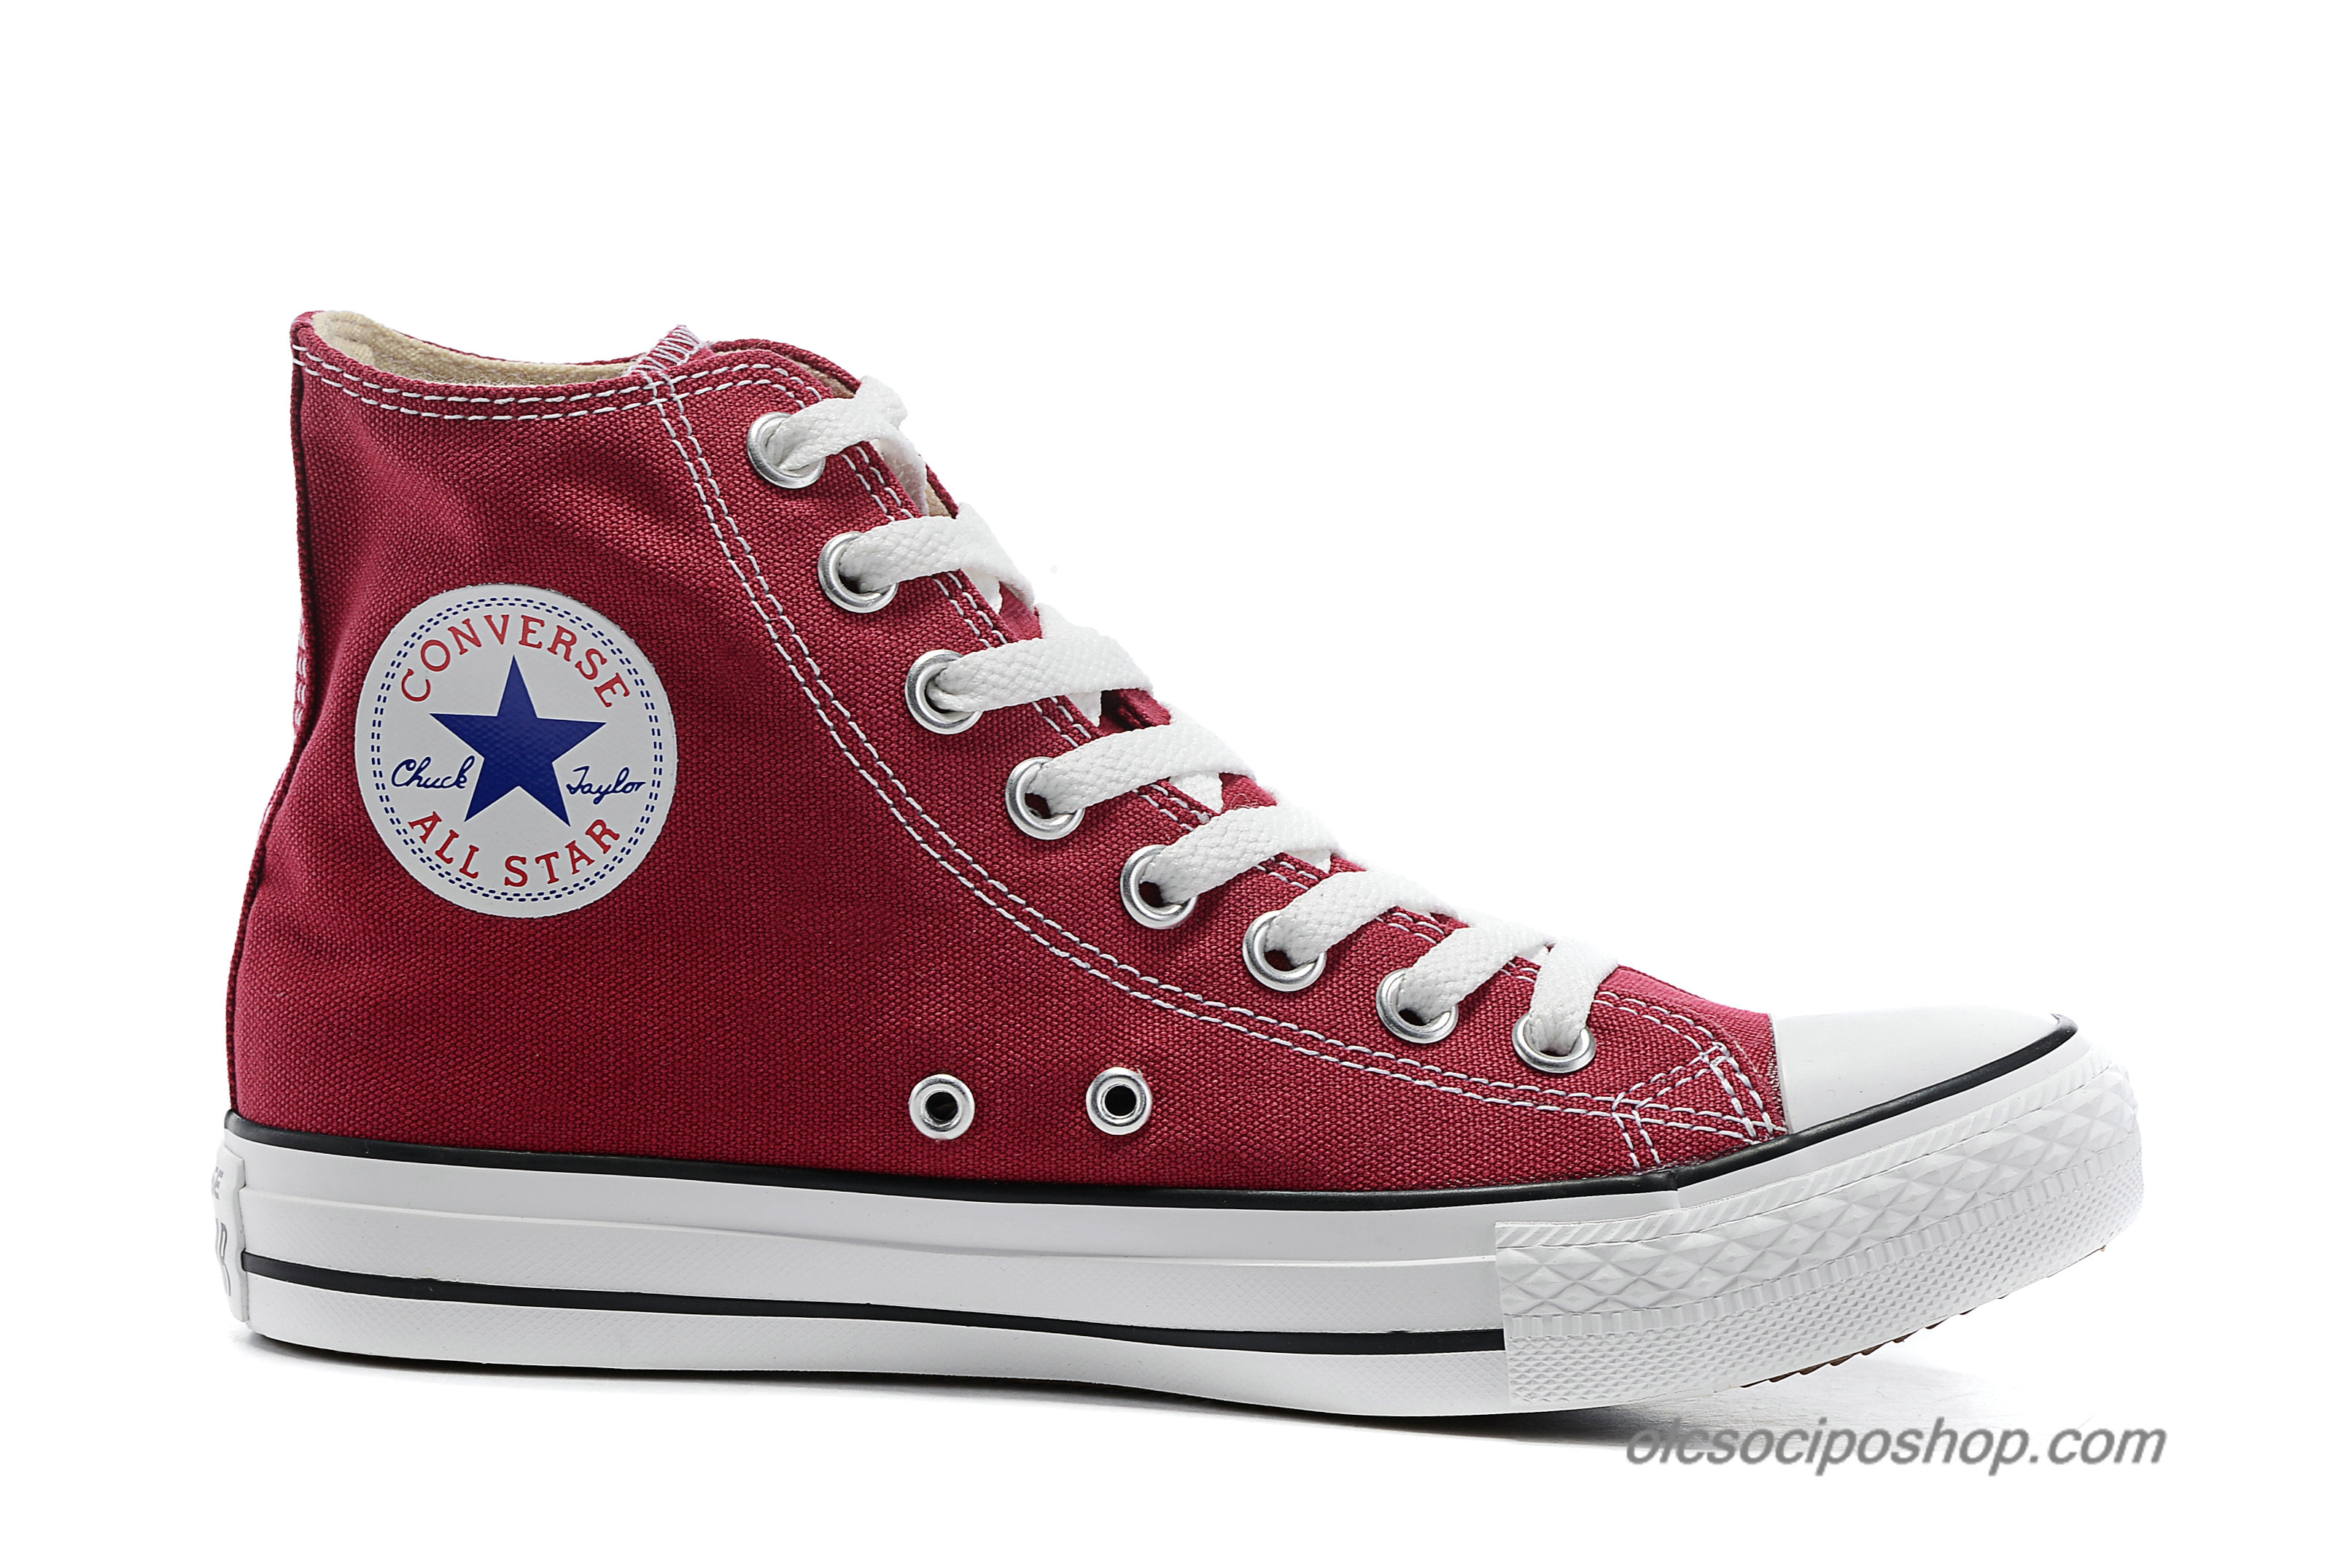 Converse Chuck Taylor All Star HI Classic Sötét vörös/Fehér Cipők (139784C)